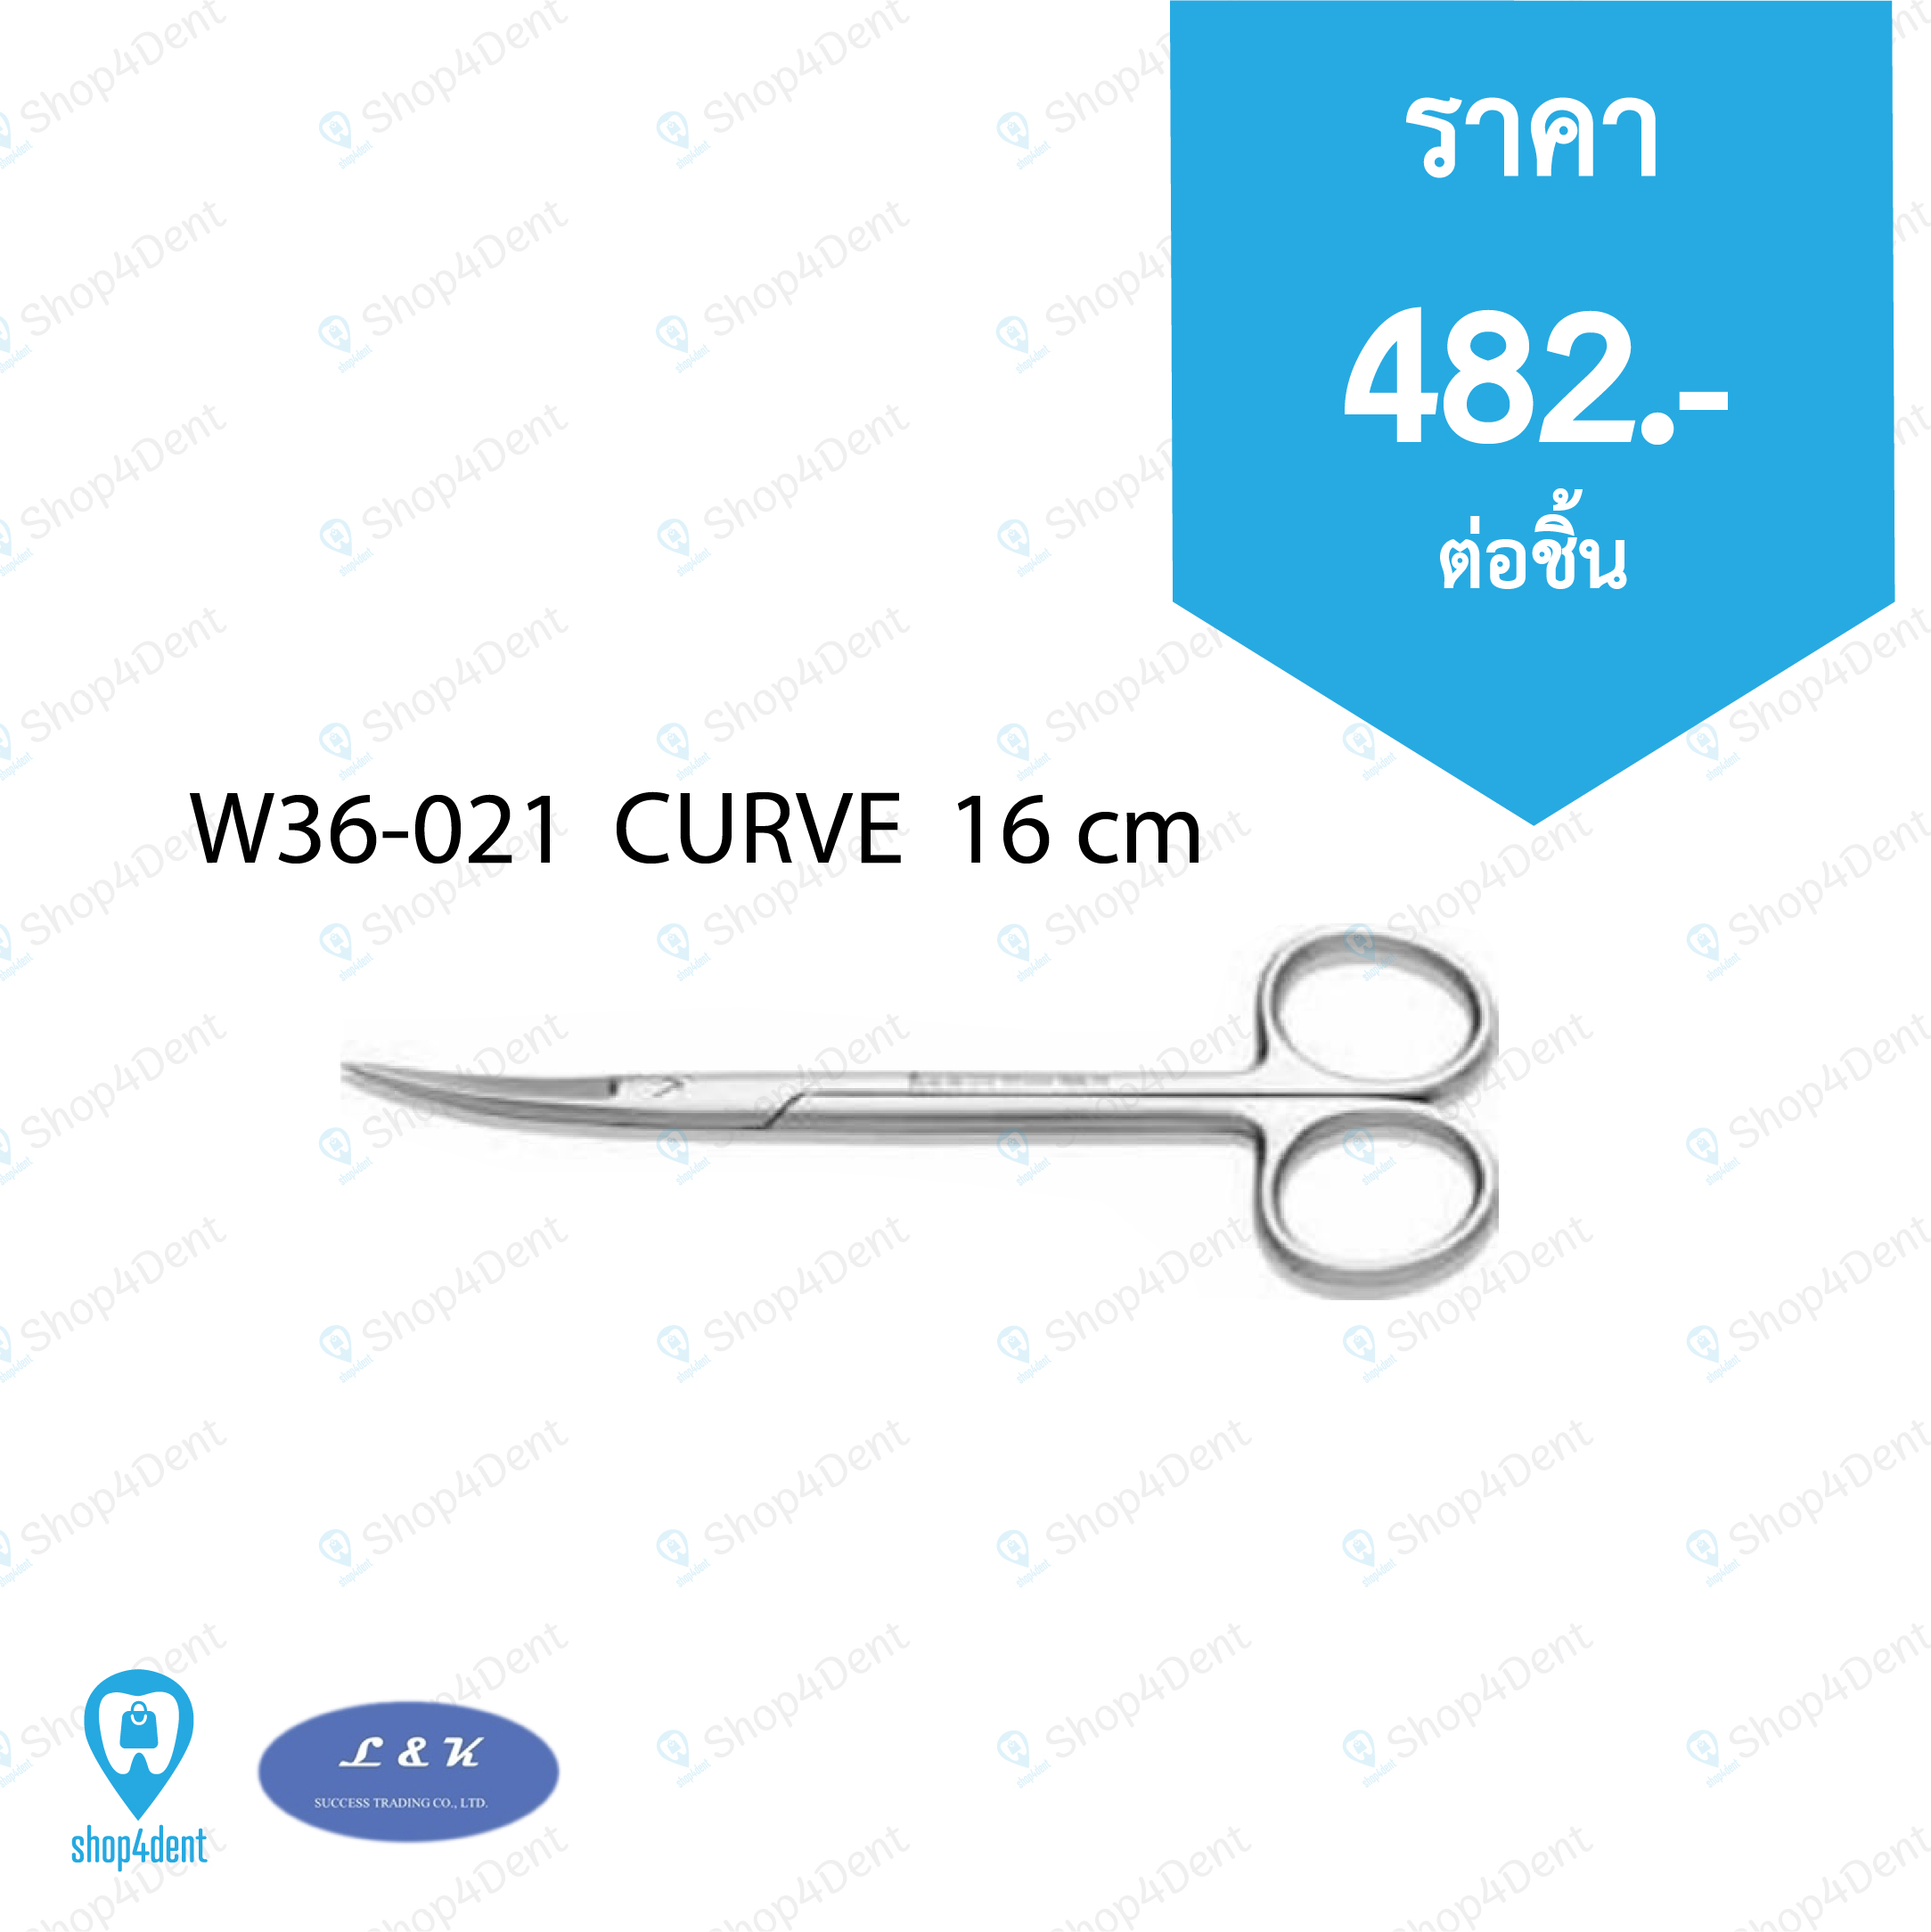 Dental Scissor_W36-021  CURVE  16 cm